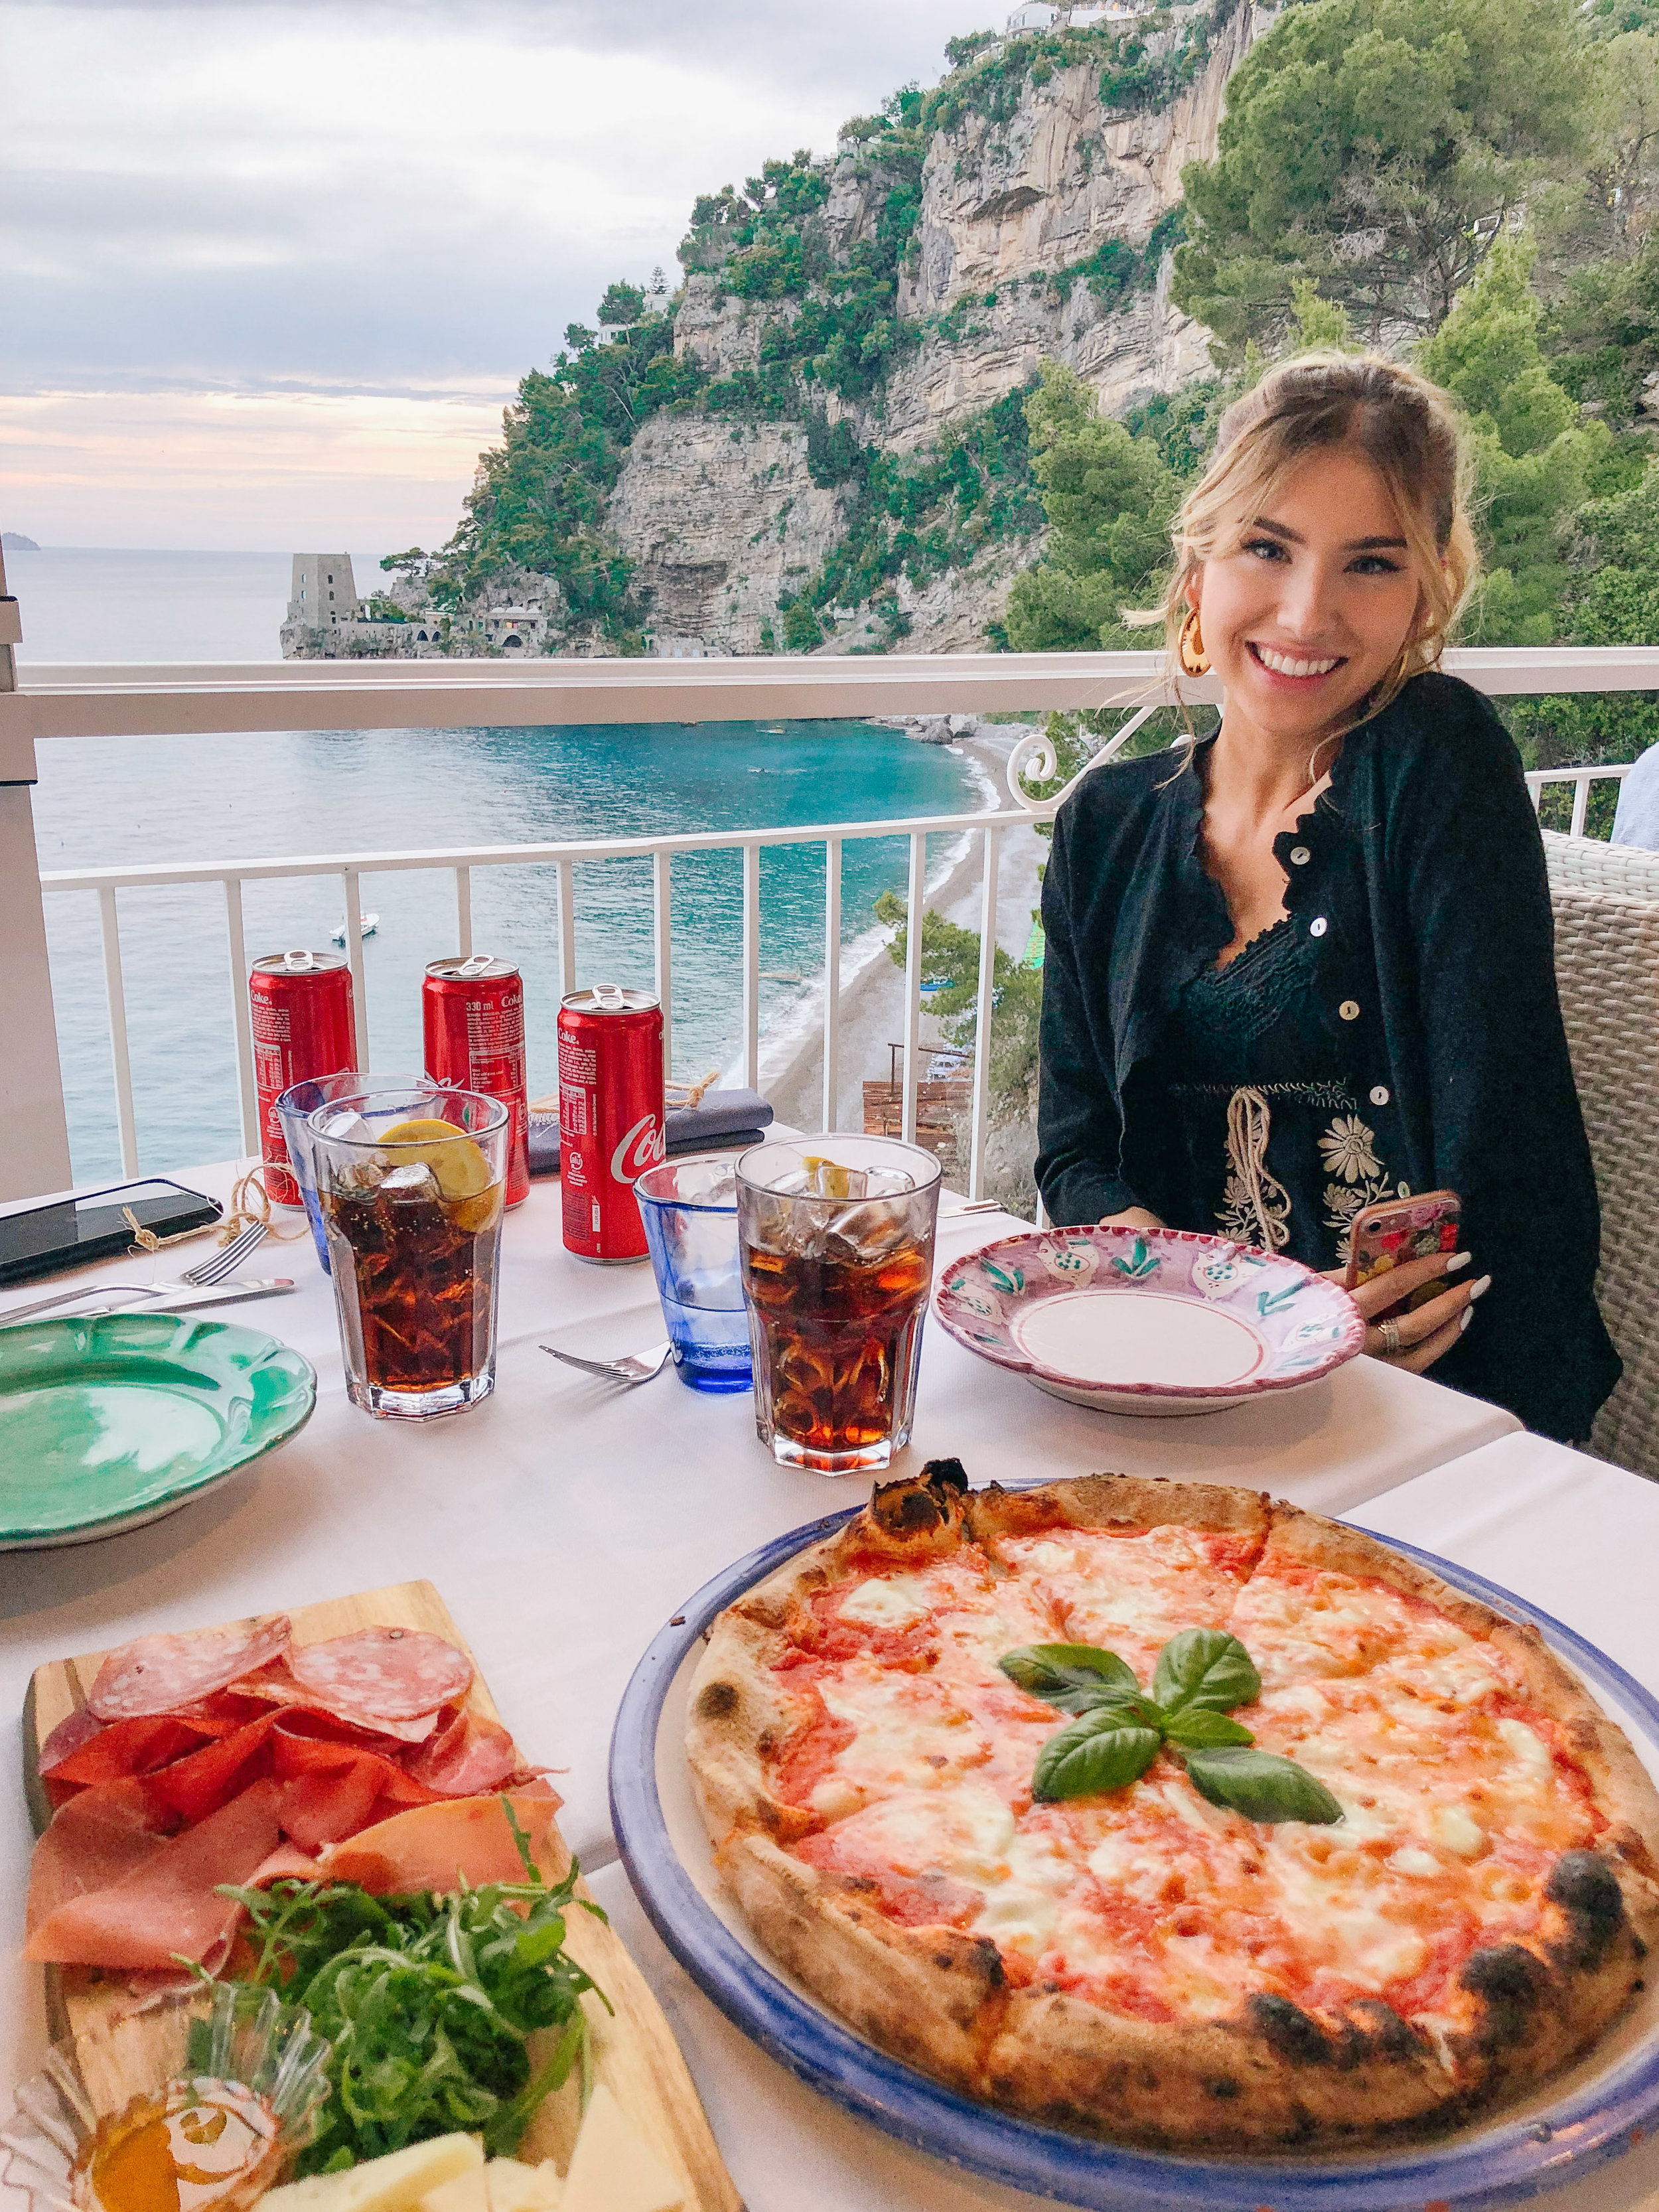 The Best Restaurants in Positano, Italy